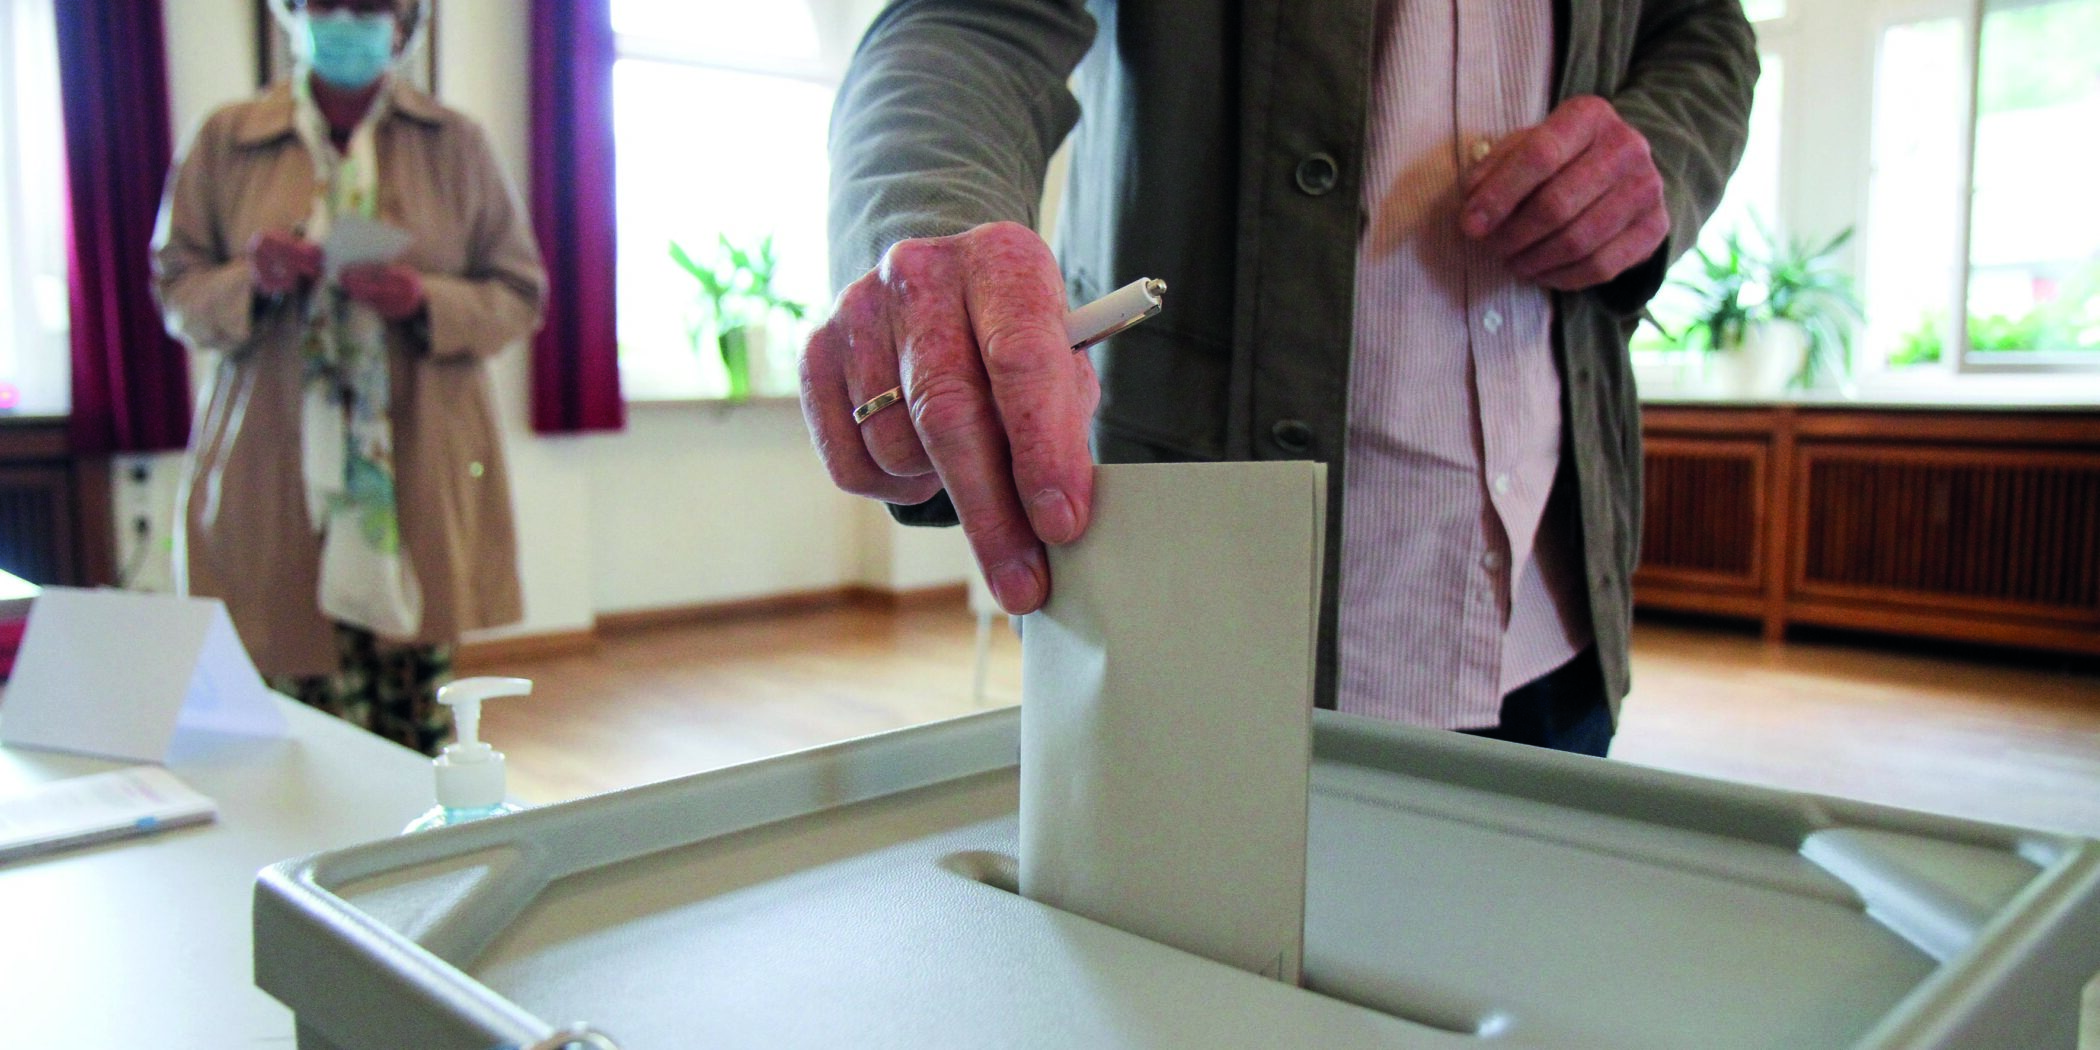 Wähler bei der Stimmabgabe im Wahlbüro